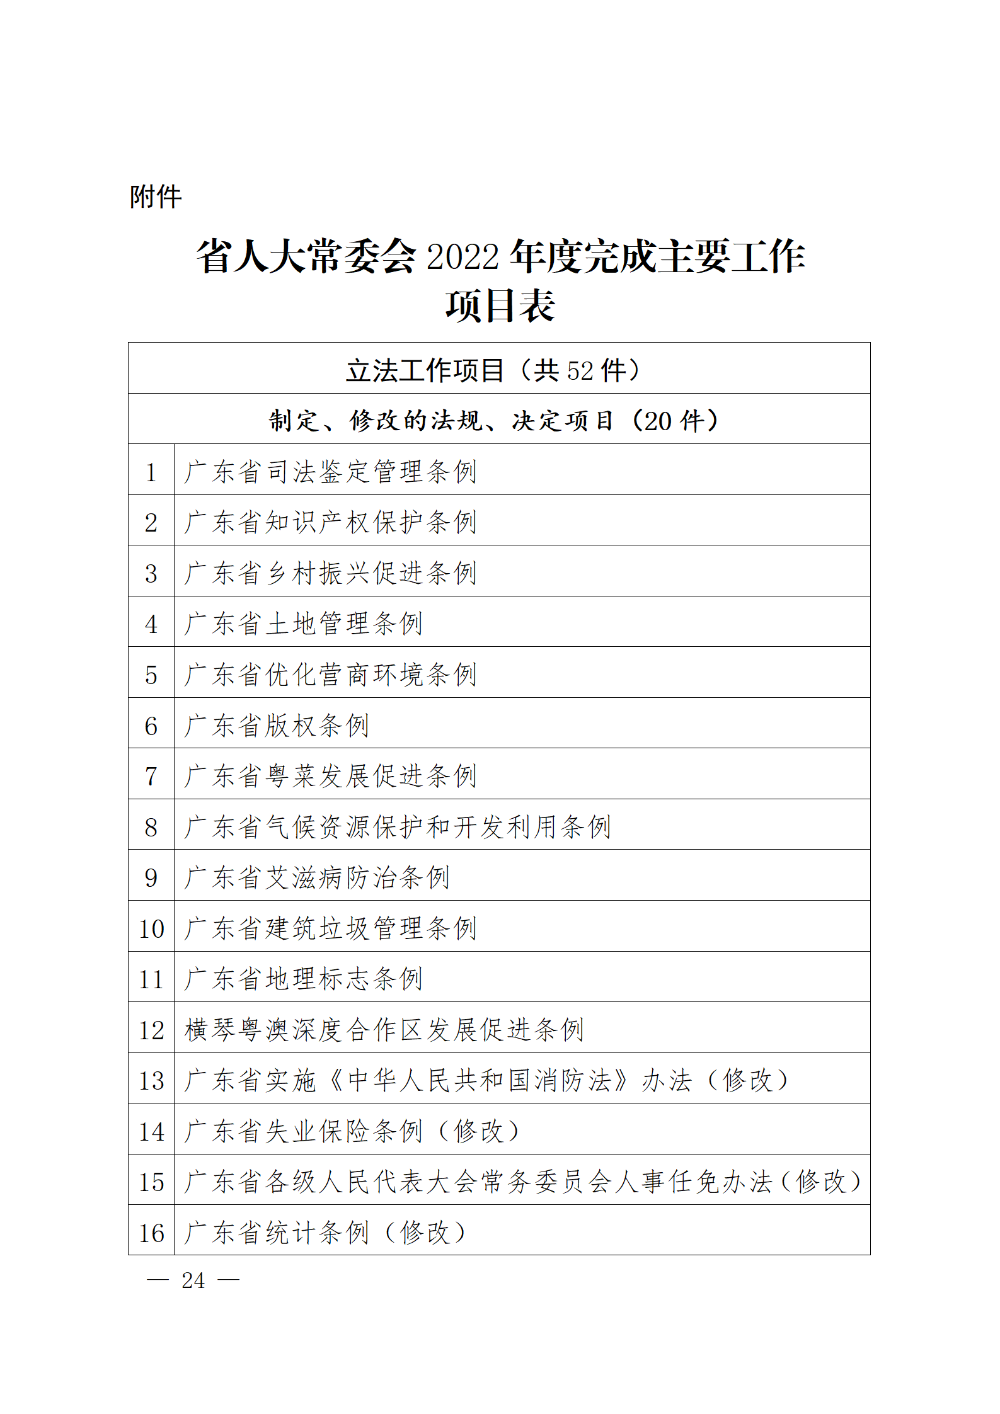 230115-（登报版定稿）广东省人民代表大会常务委员会工作报告_24.png